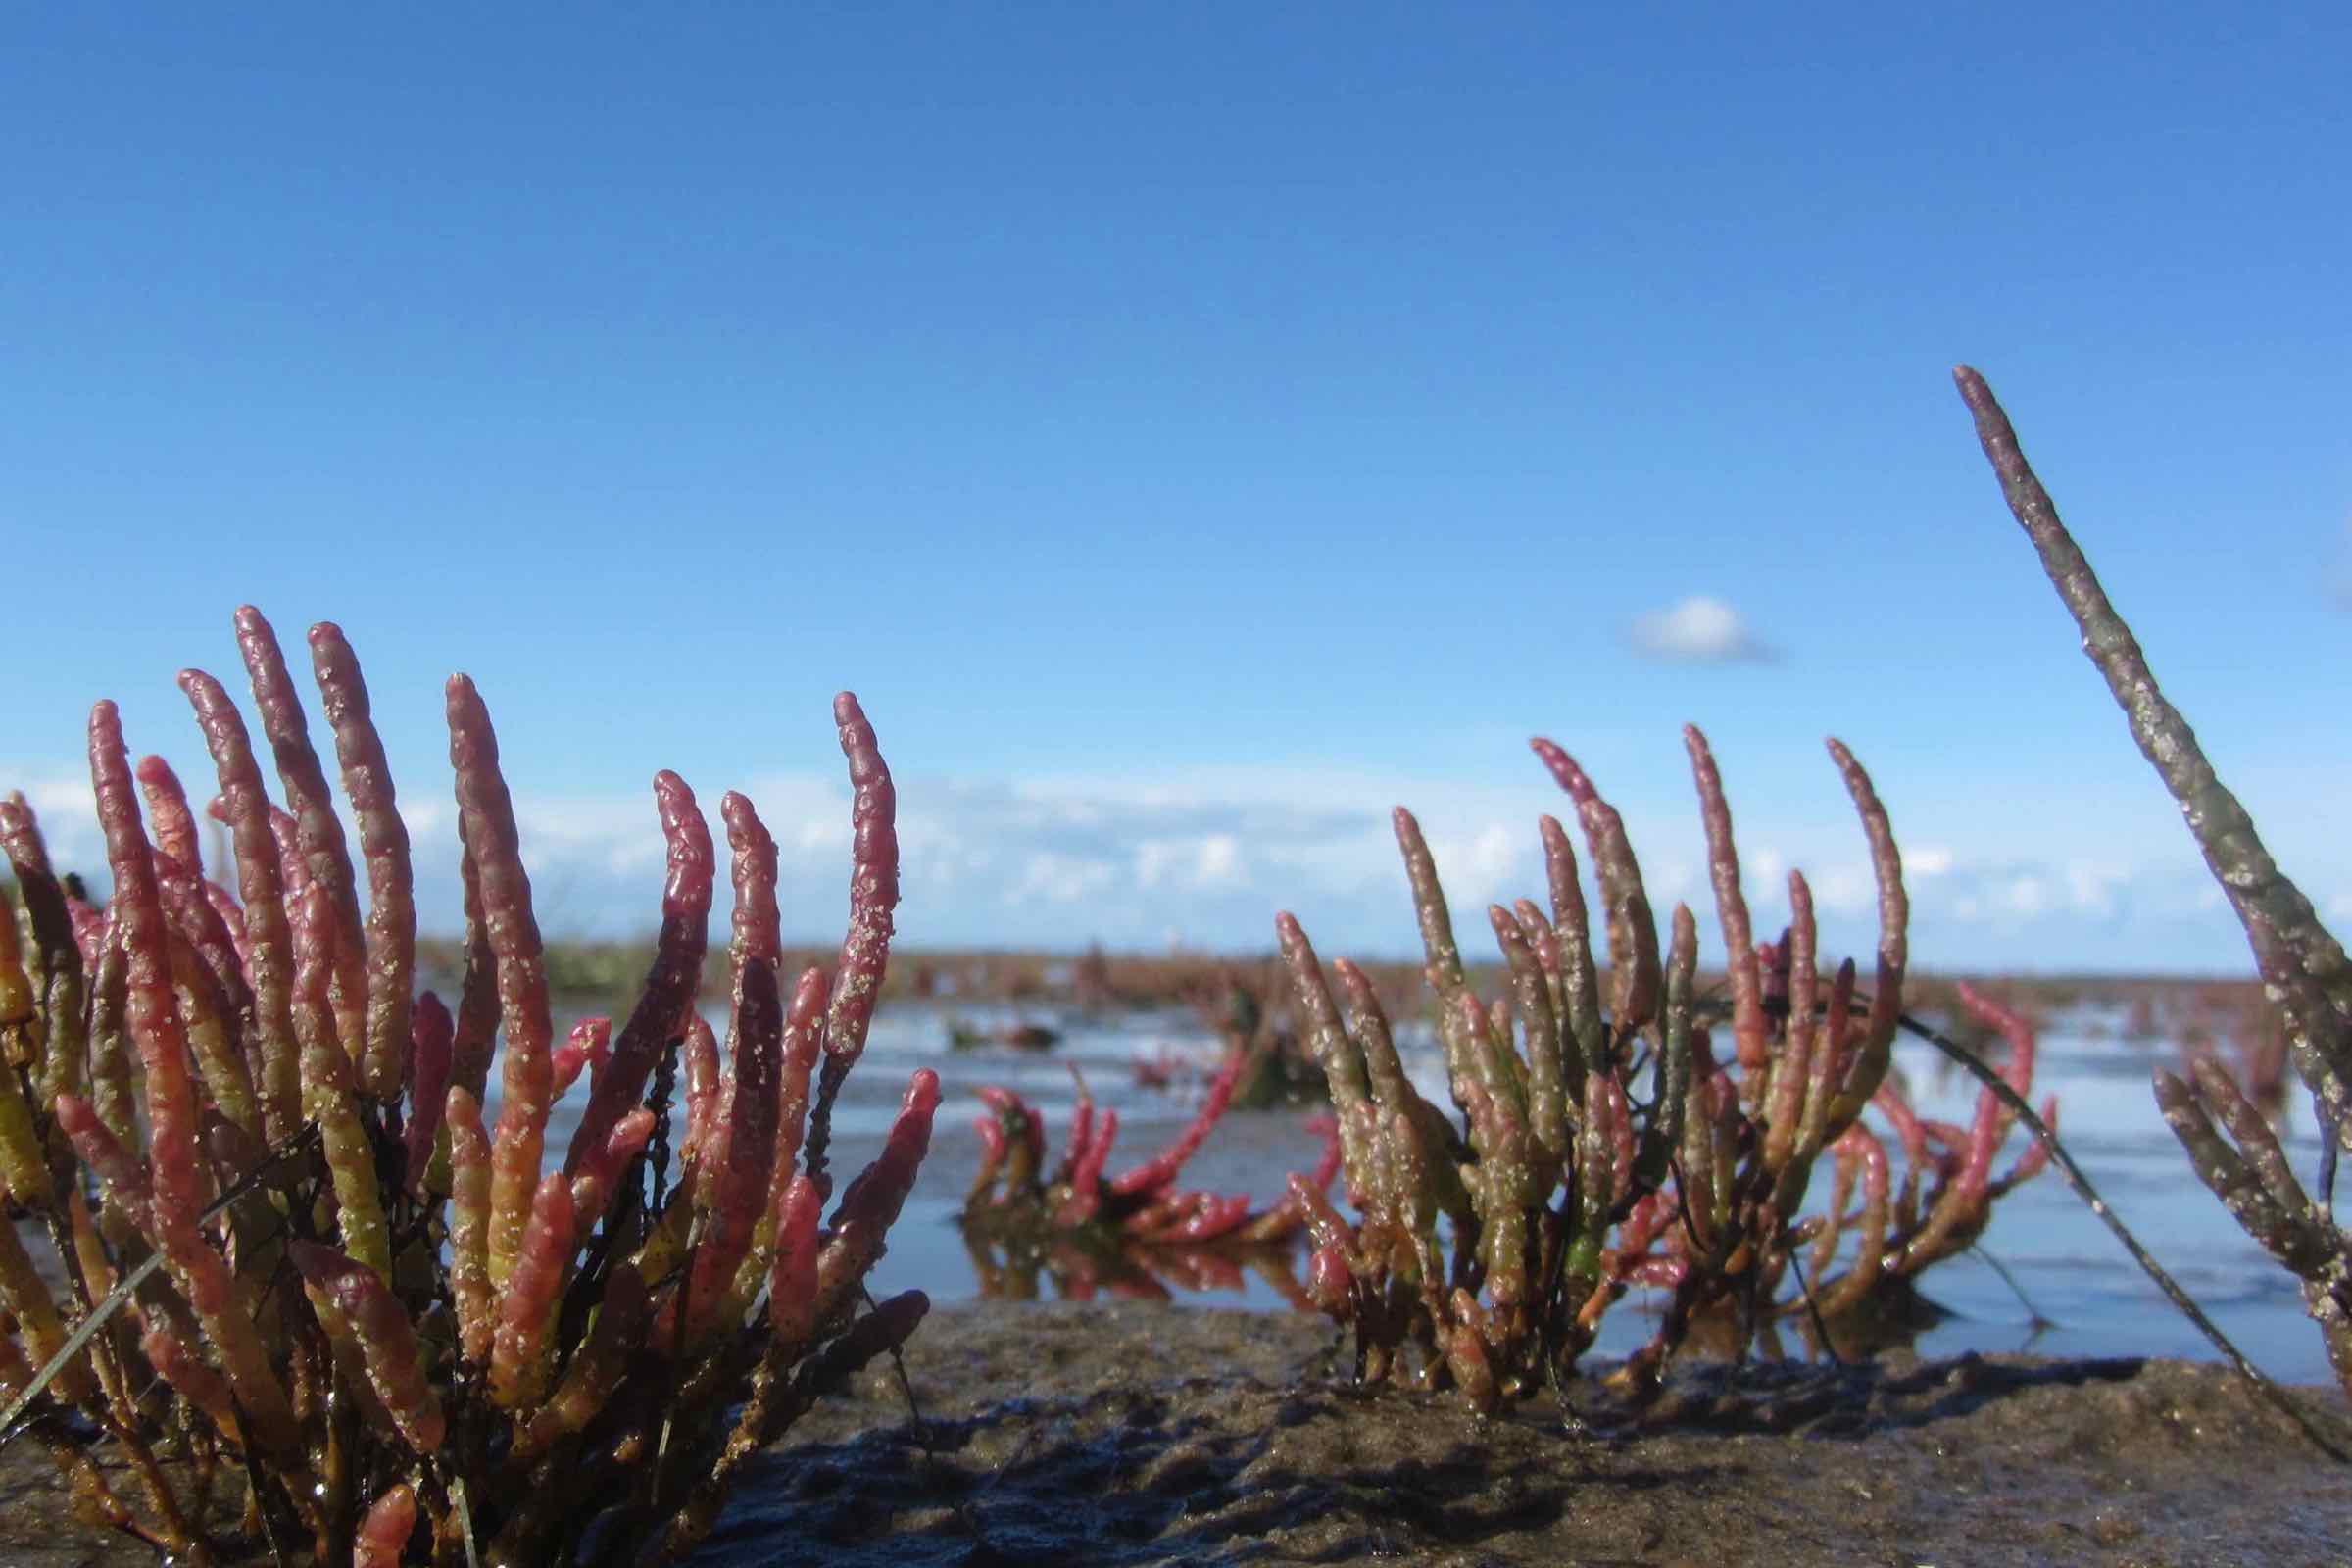 Die Salzwiese ist ein extremer Lebensraum, halb Meer halb Land. Auf dieser Führung stellt die Schutzstation Wattenmeer Nordstrand zahlreiche
Pflanzen vor und erkundet den Lebensraum mit allen Sinnen.